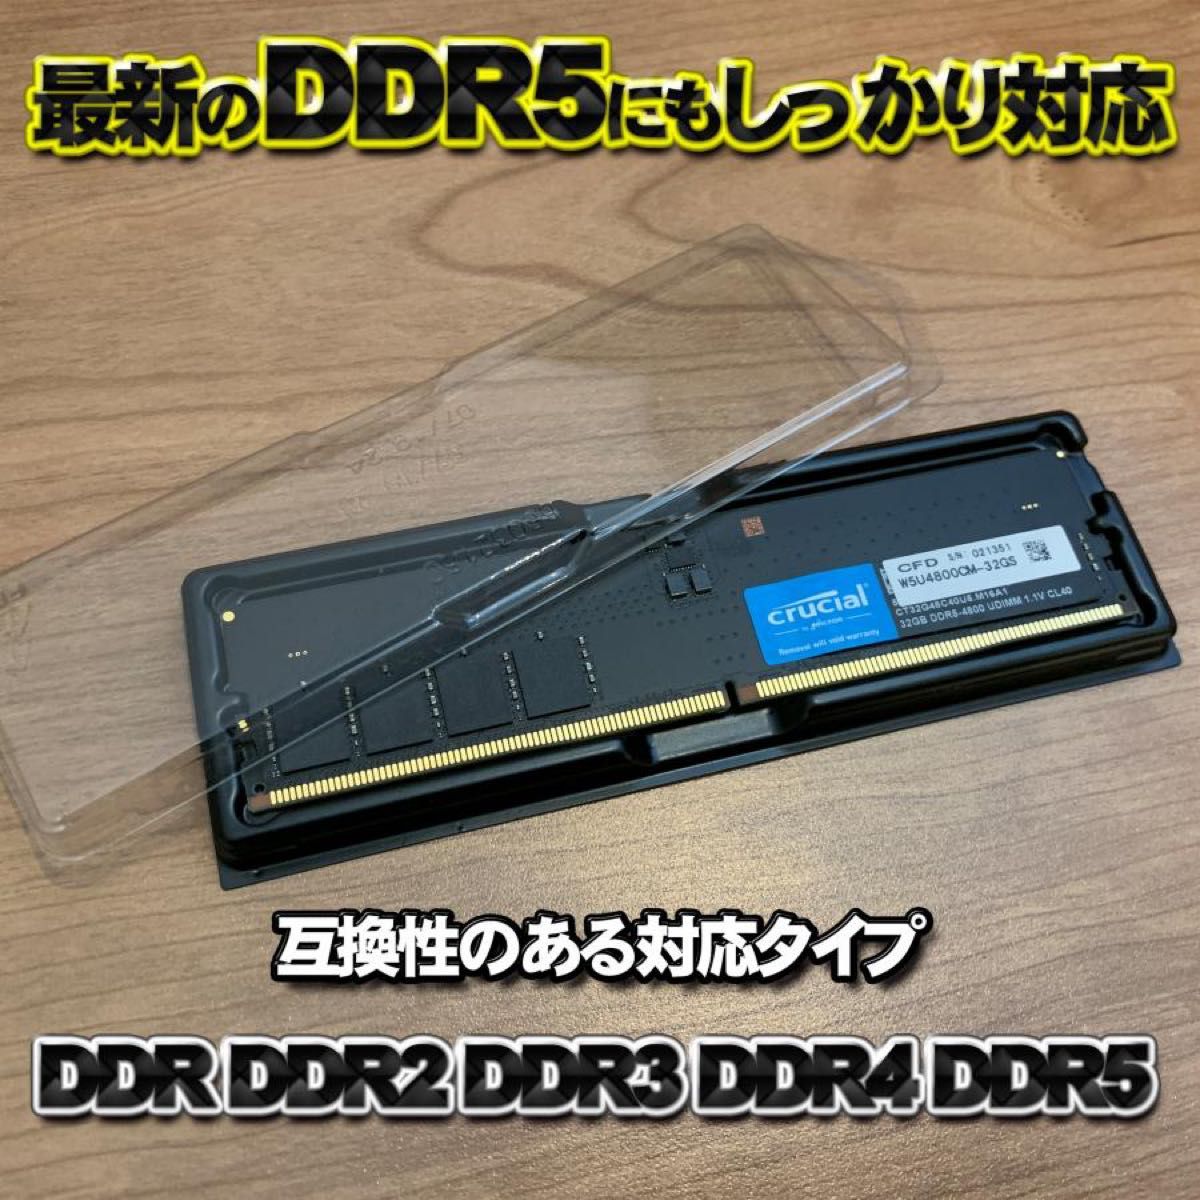 【 DDR4 対応 】蓋付き PC メモリー シェルケース DIMM 用20枚セット